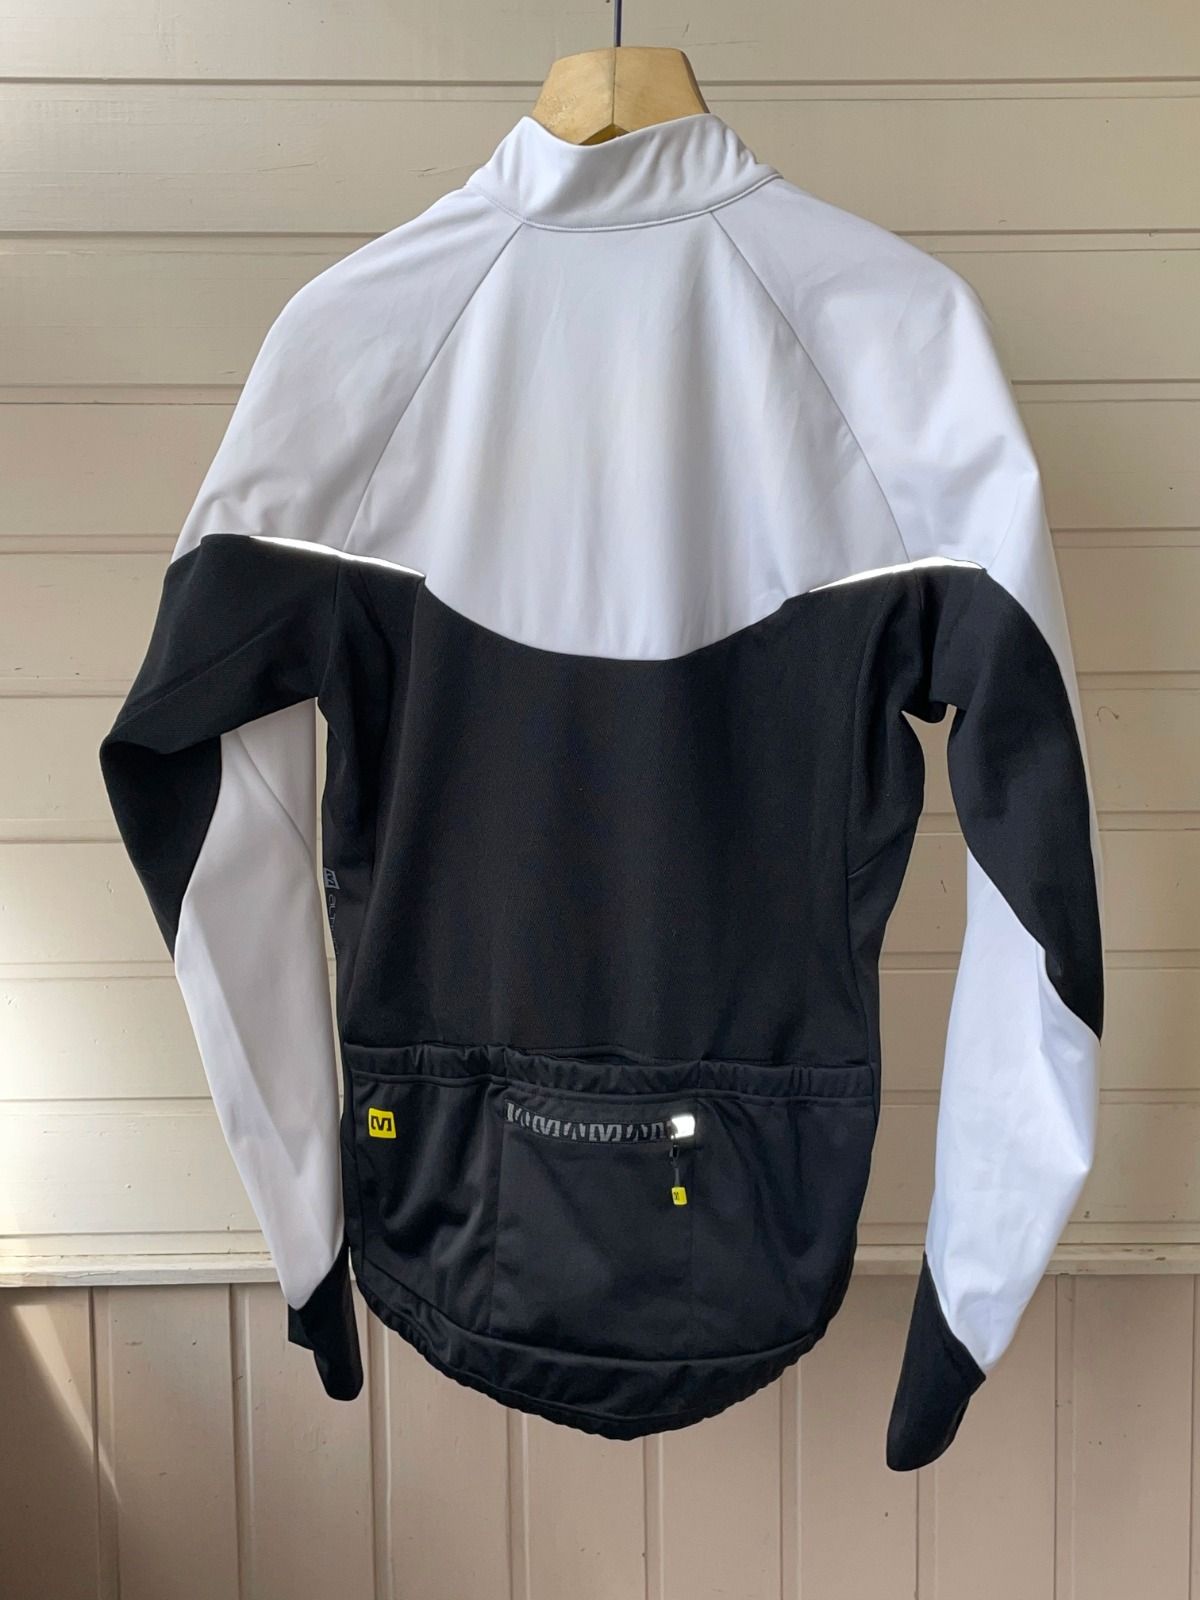 Велосипедная куртка Mavic Altium, размер L, б/у